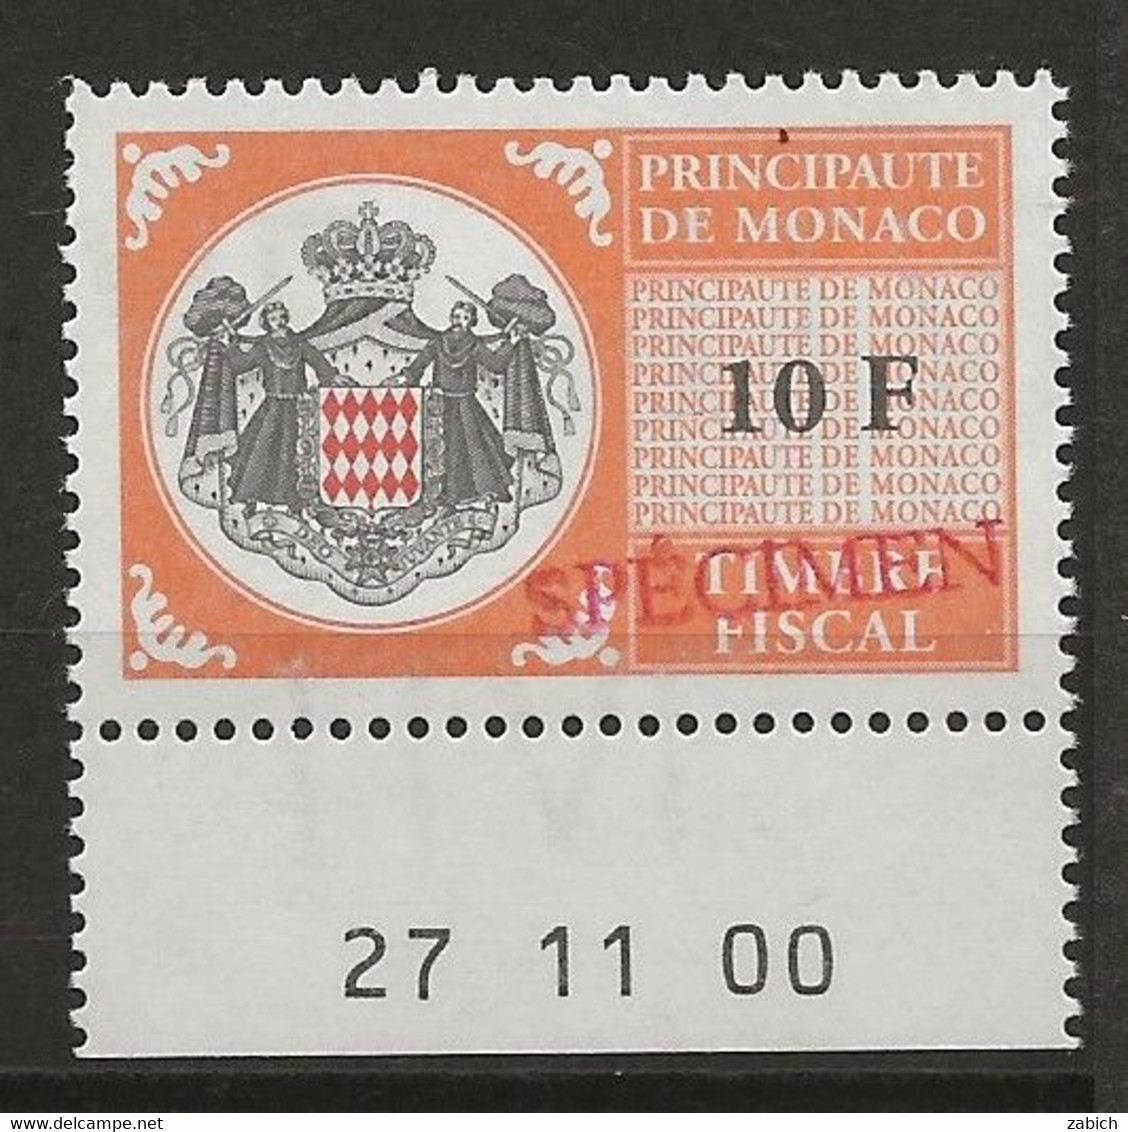 FISCAUX DE MONACO SERIE UNIFIEE N° 102 10Forange Rare Coin Daté Du 27 11 00 Surchargé Spécimen Neuf Gomme Mnh (**) - Fiscaux